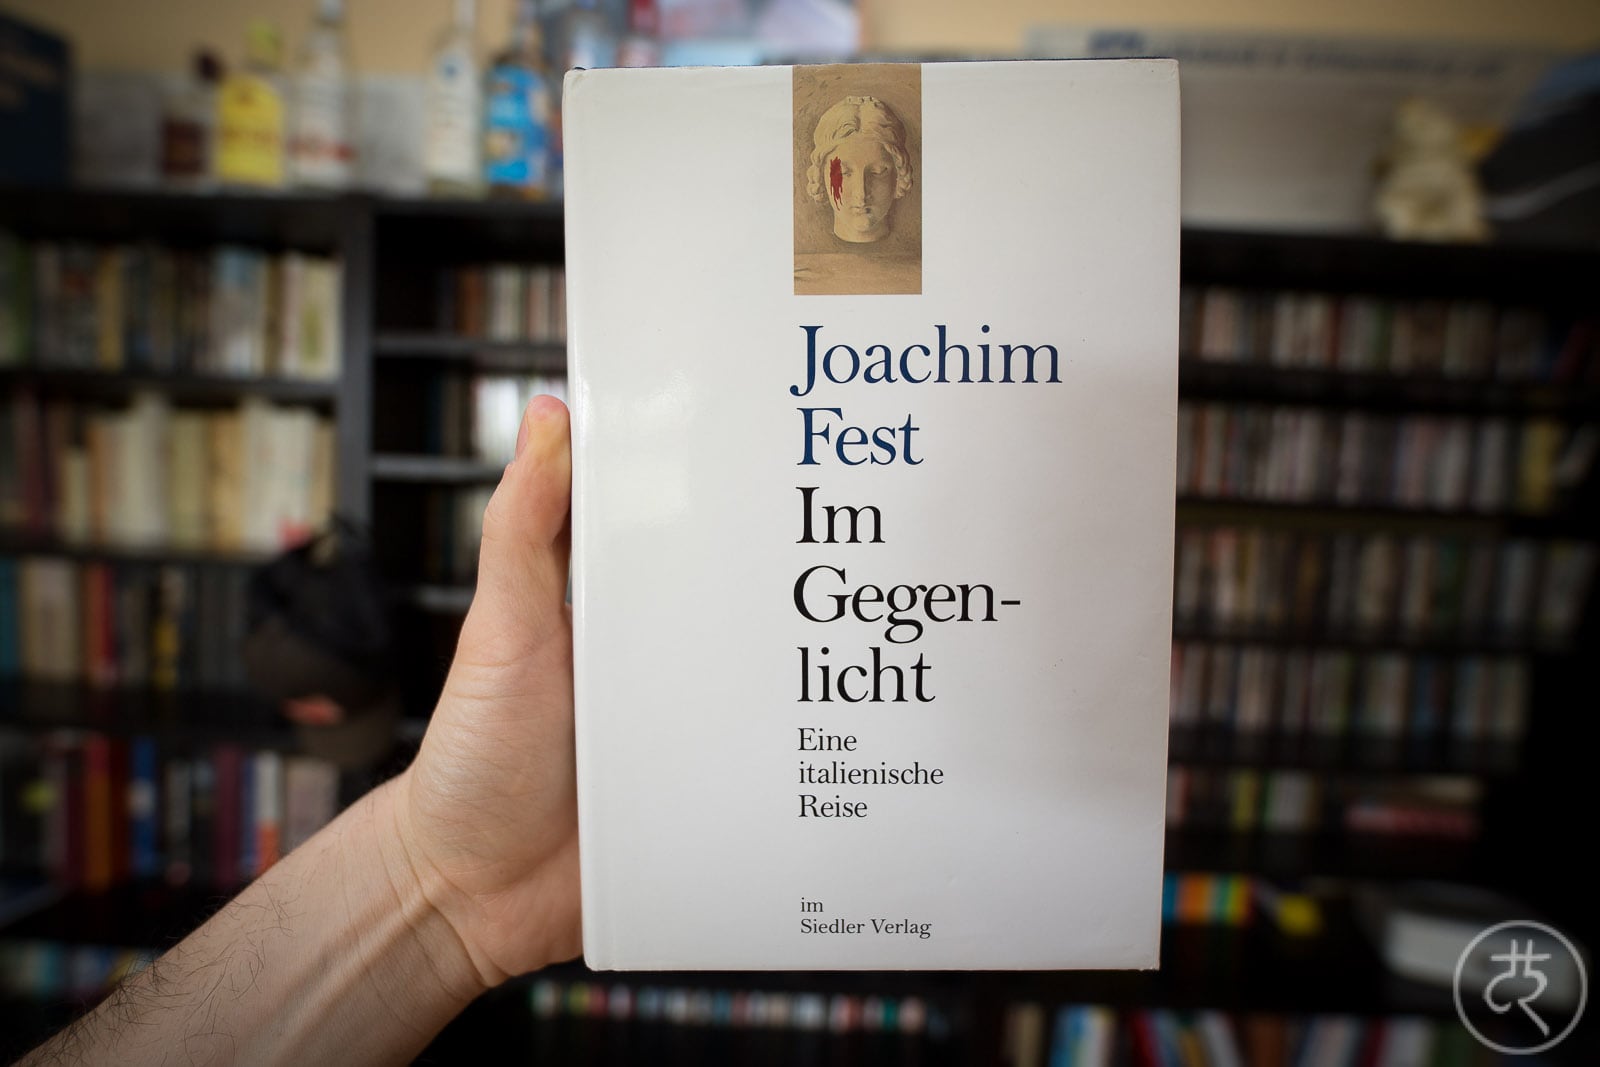 Joachim Fest's "Contre-jour"